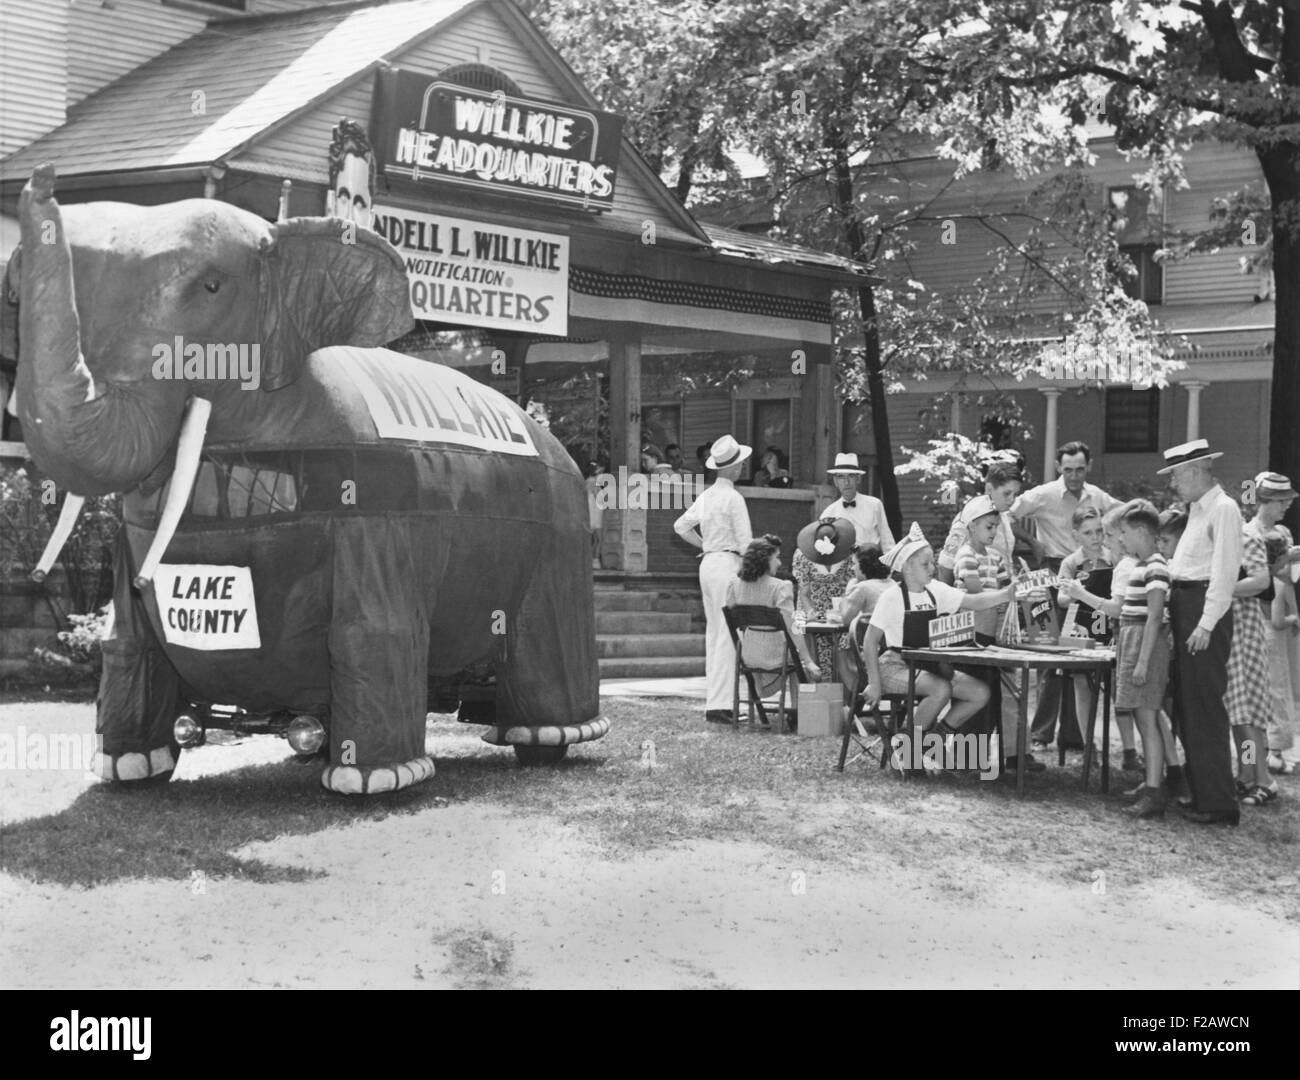 Una stoffa di grandi dimensioni gli attacchi di elefante acquirenti di un souvenir stand a Elwood, Indiana, 15 agosto 1940. Stavano preparando per Willkie's aspetto per rendere la sua accettazione formale del presidente repubblicano nomina. (CSU 2015 11 1403) Foto Stock